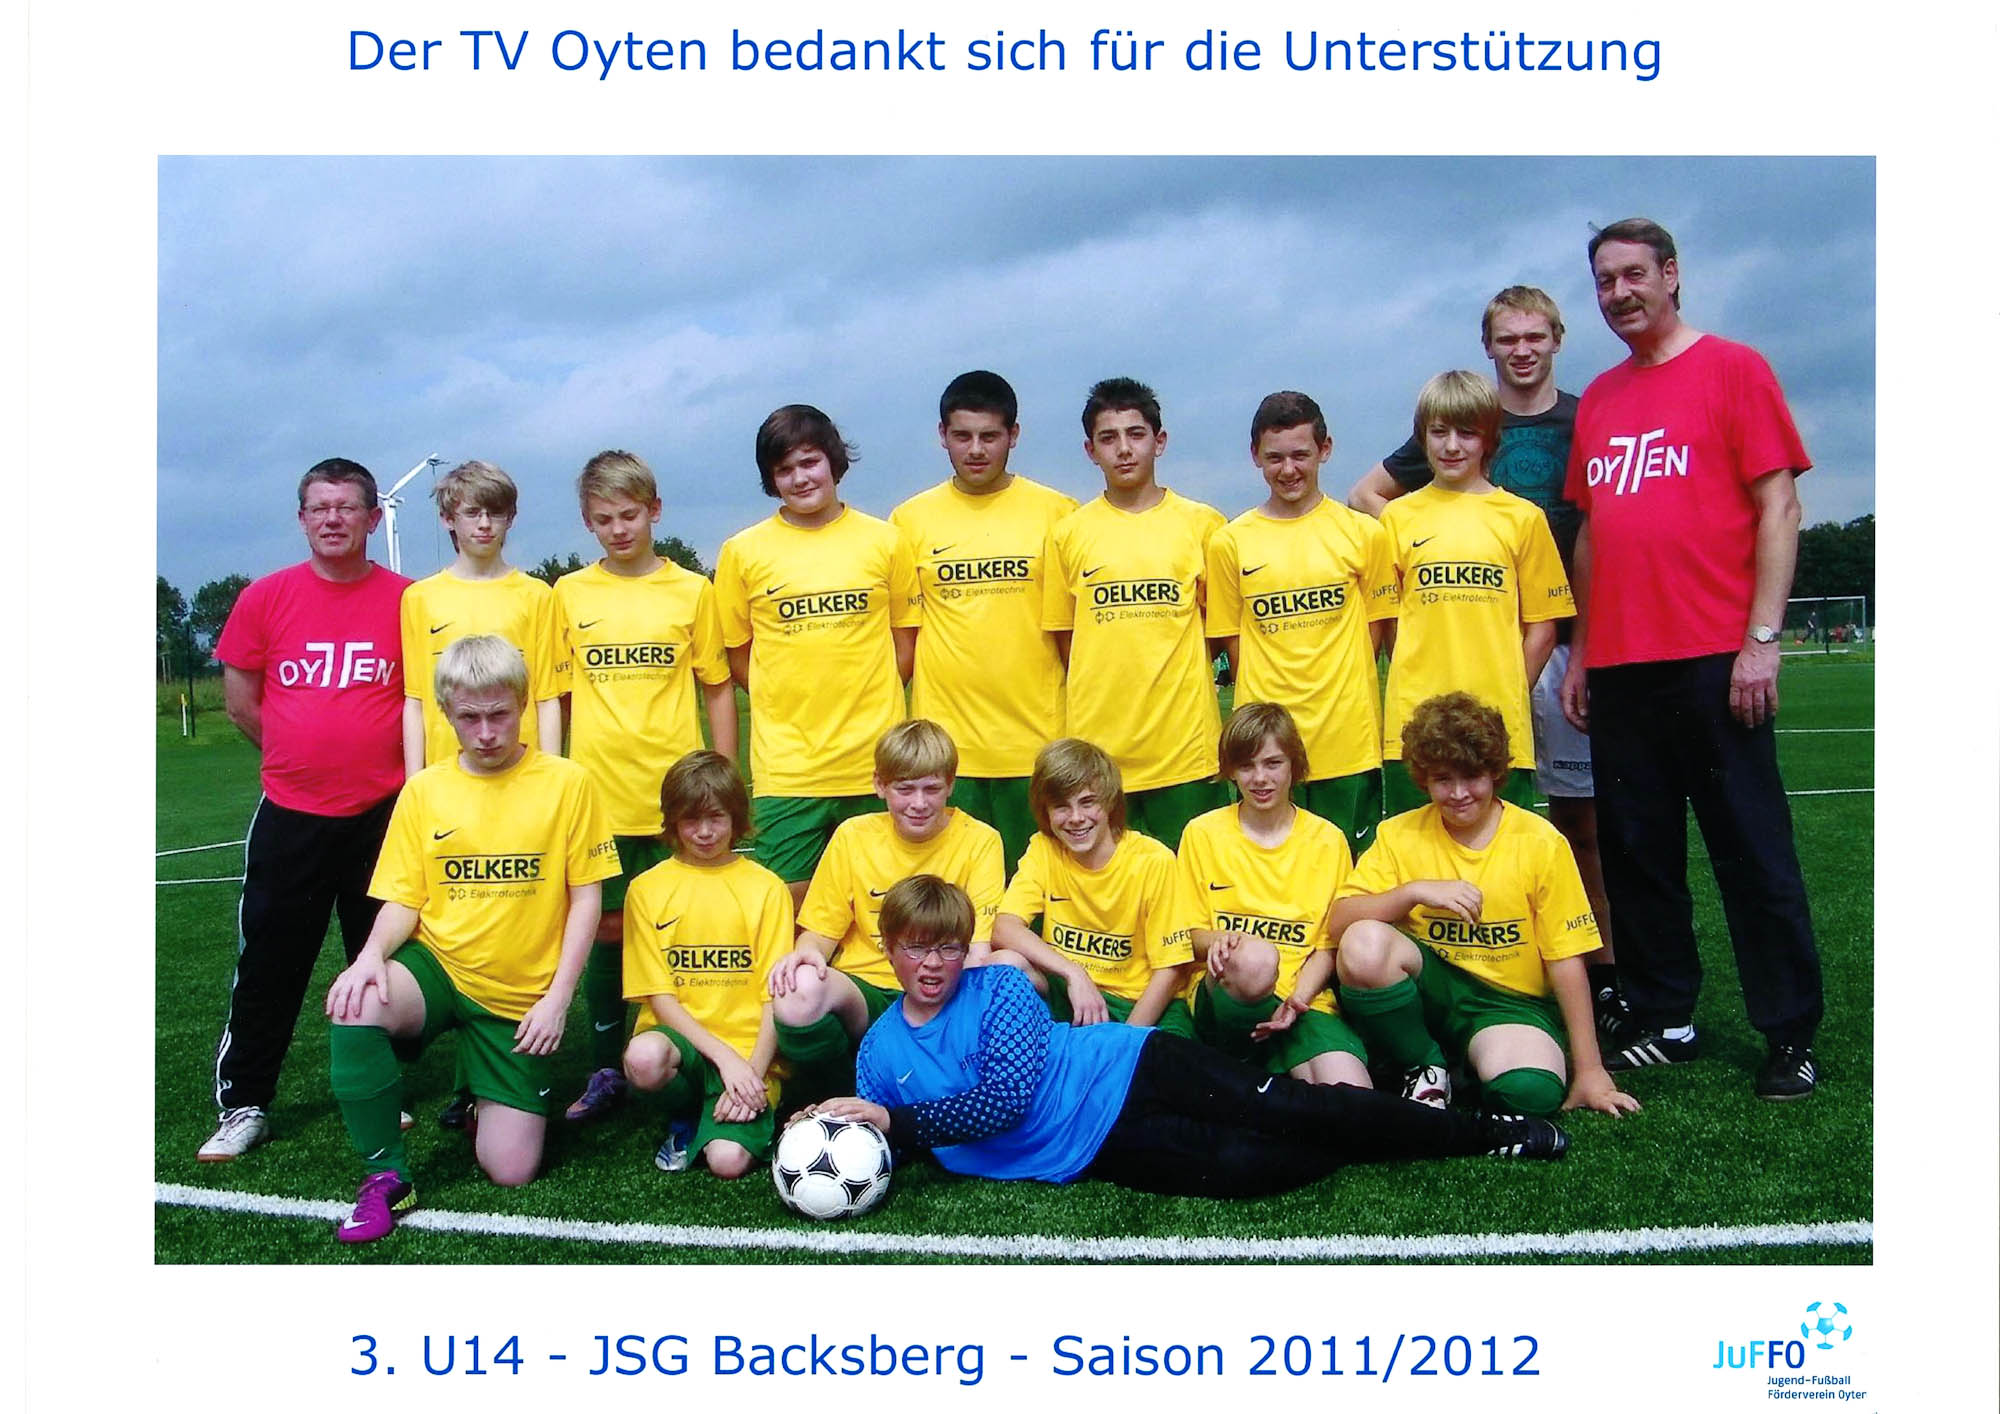 Sponsoring JSG Backsberg 3. U14 Fußball 2011/12